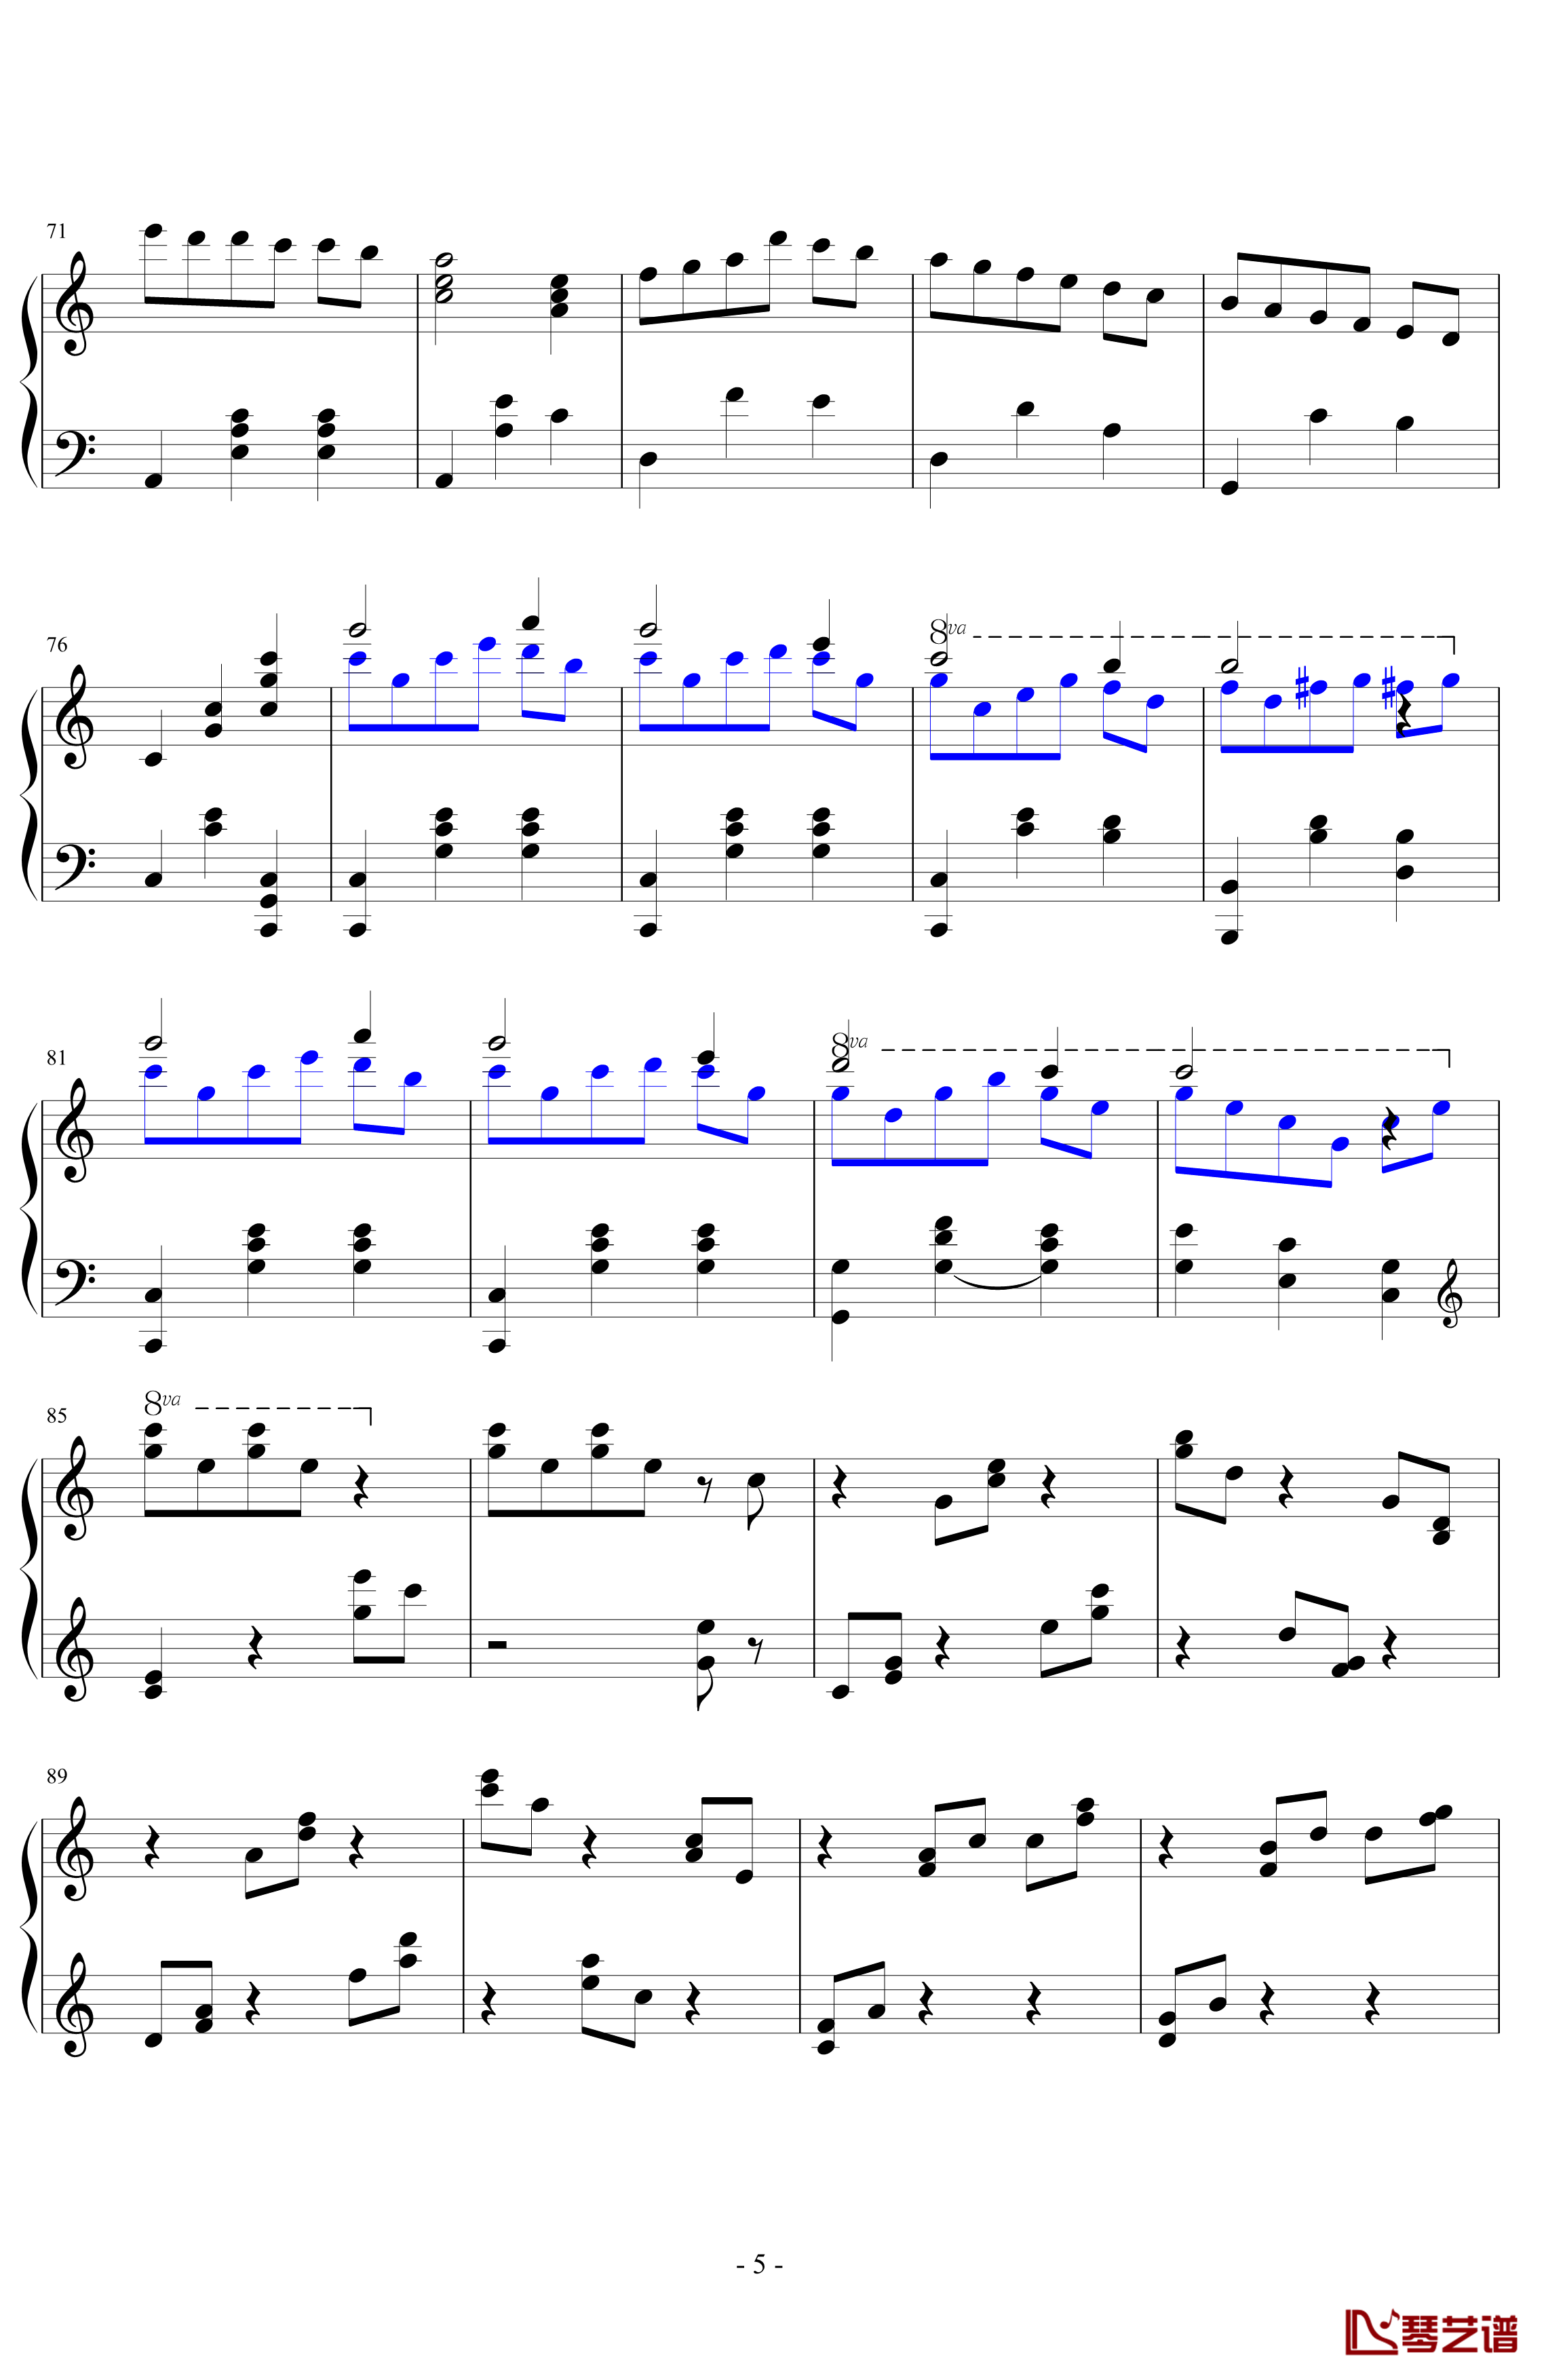 生日歌变奏曲钢琴谱-PARROT1865